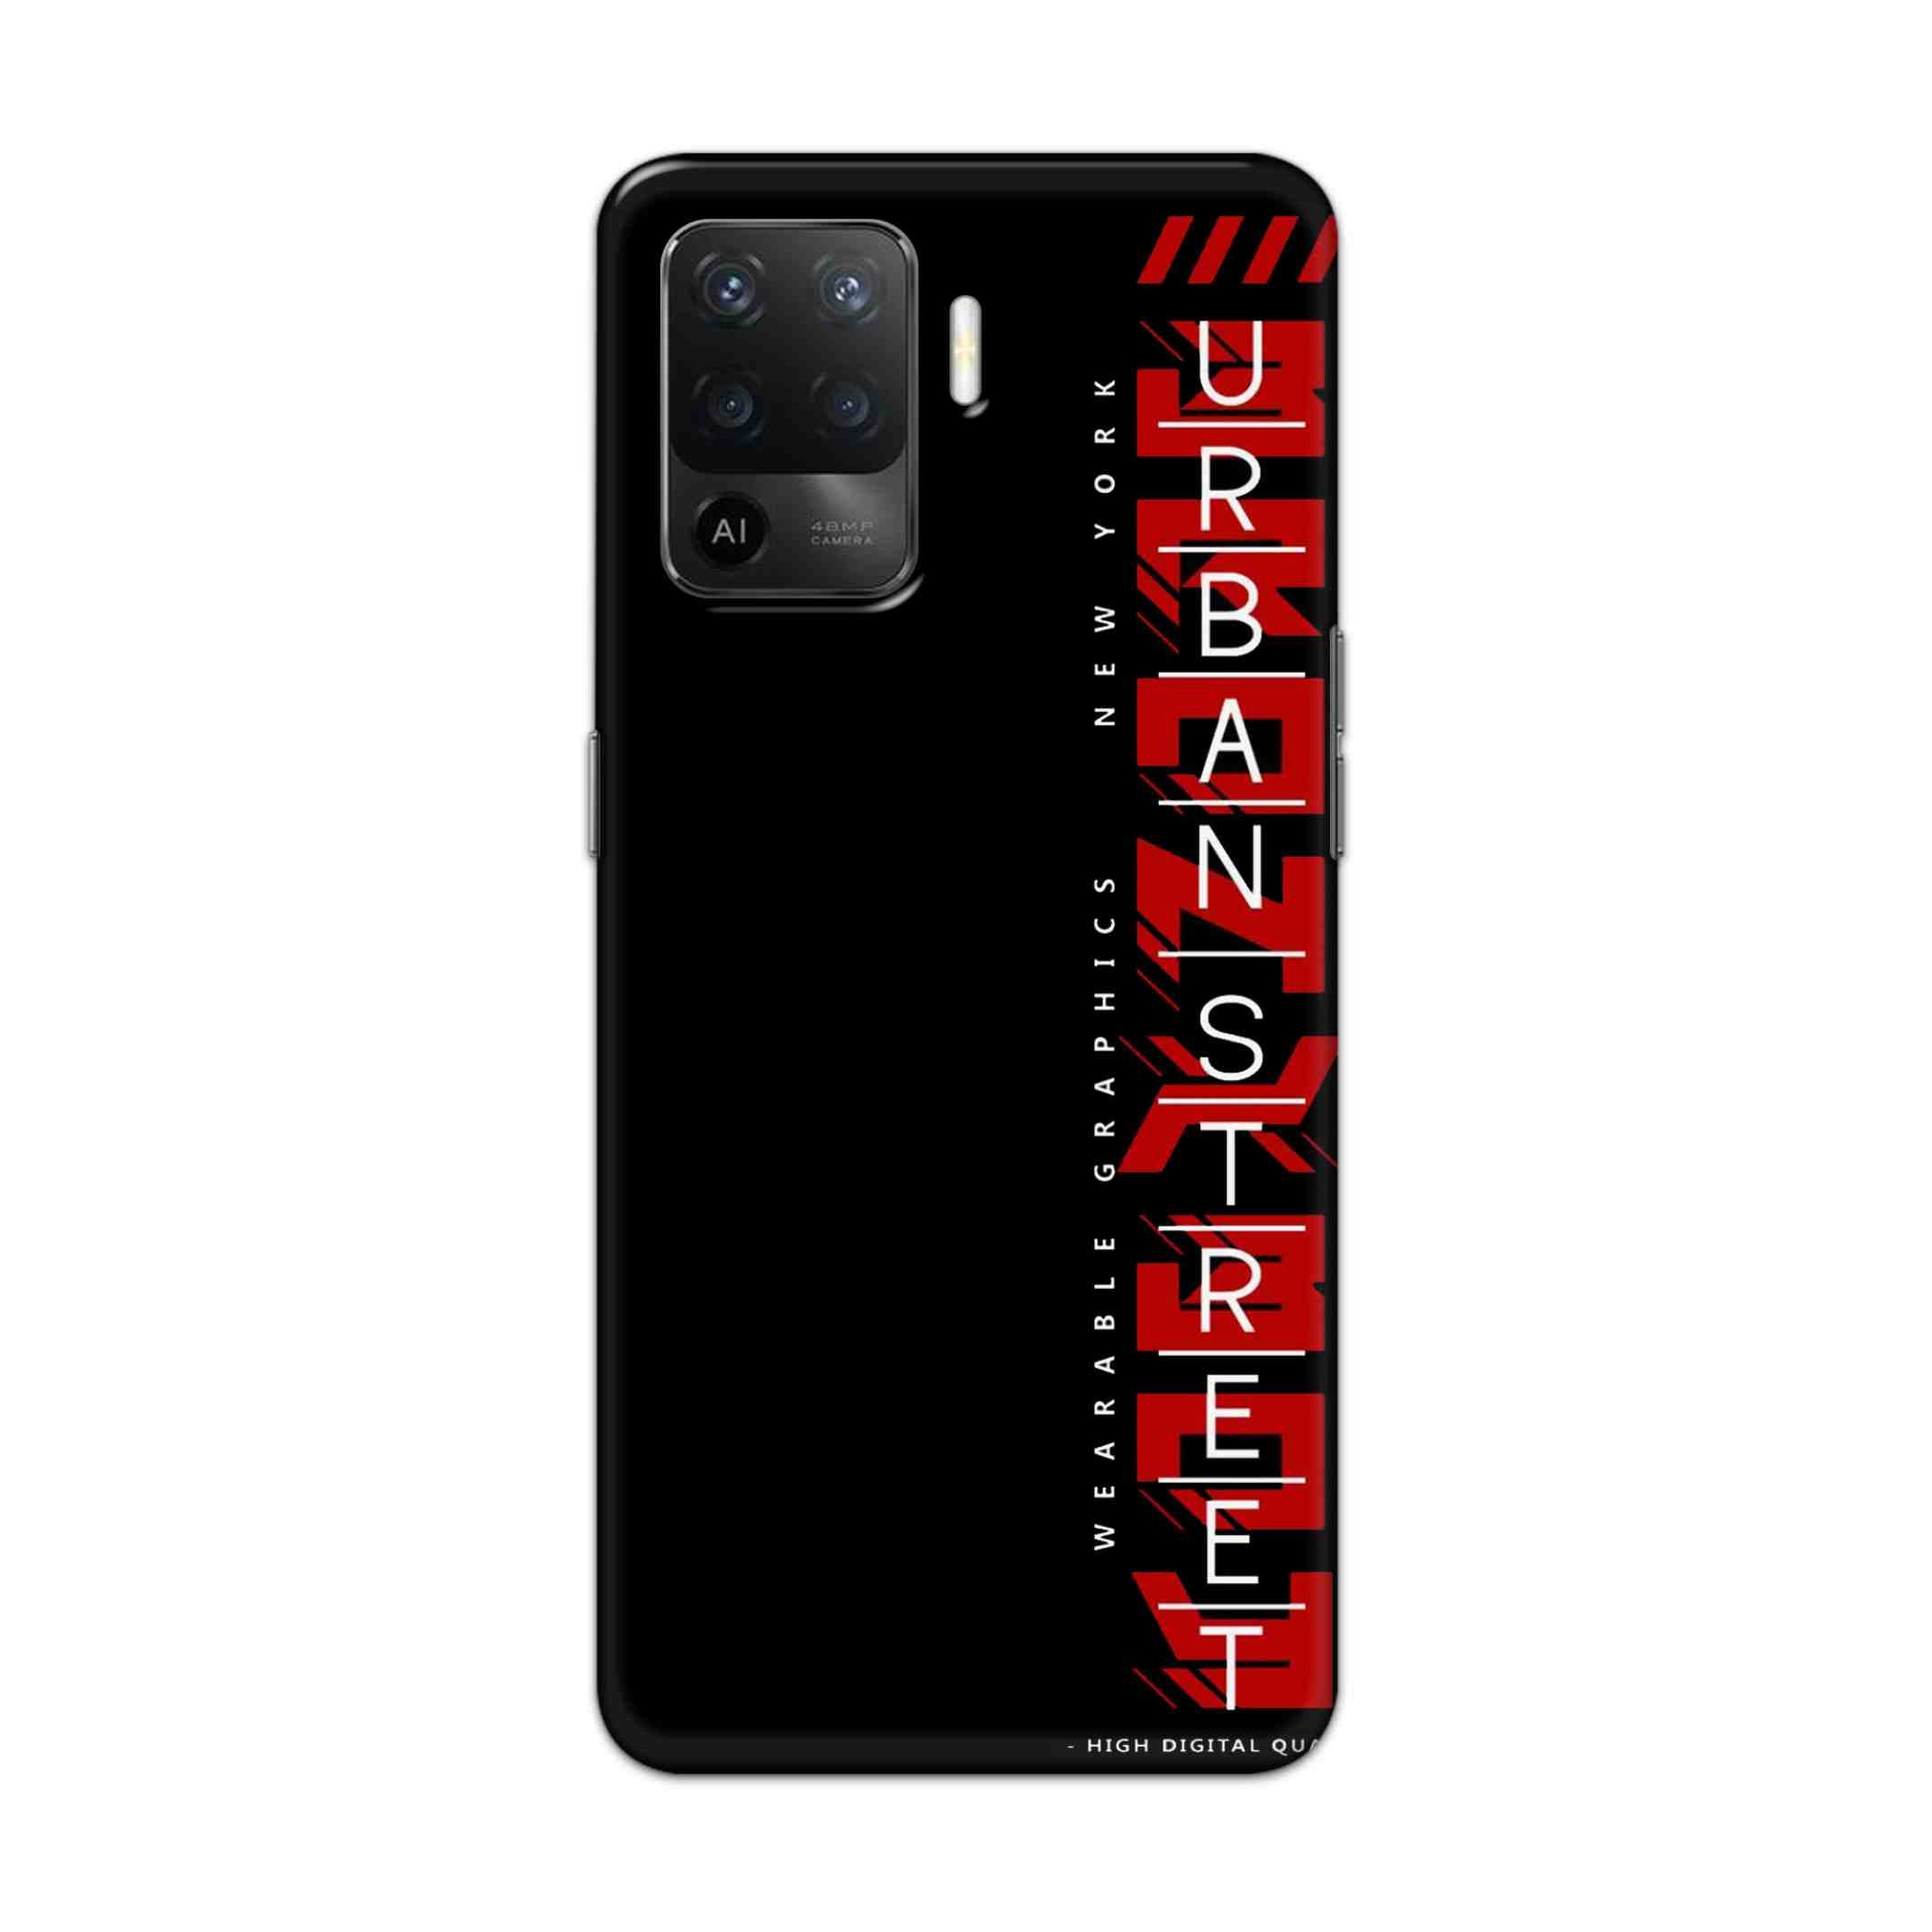 Buy Urban Street Hard Back Mobile Phone Case Cover For Oppo F19 Pro Online